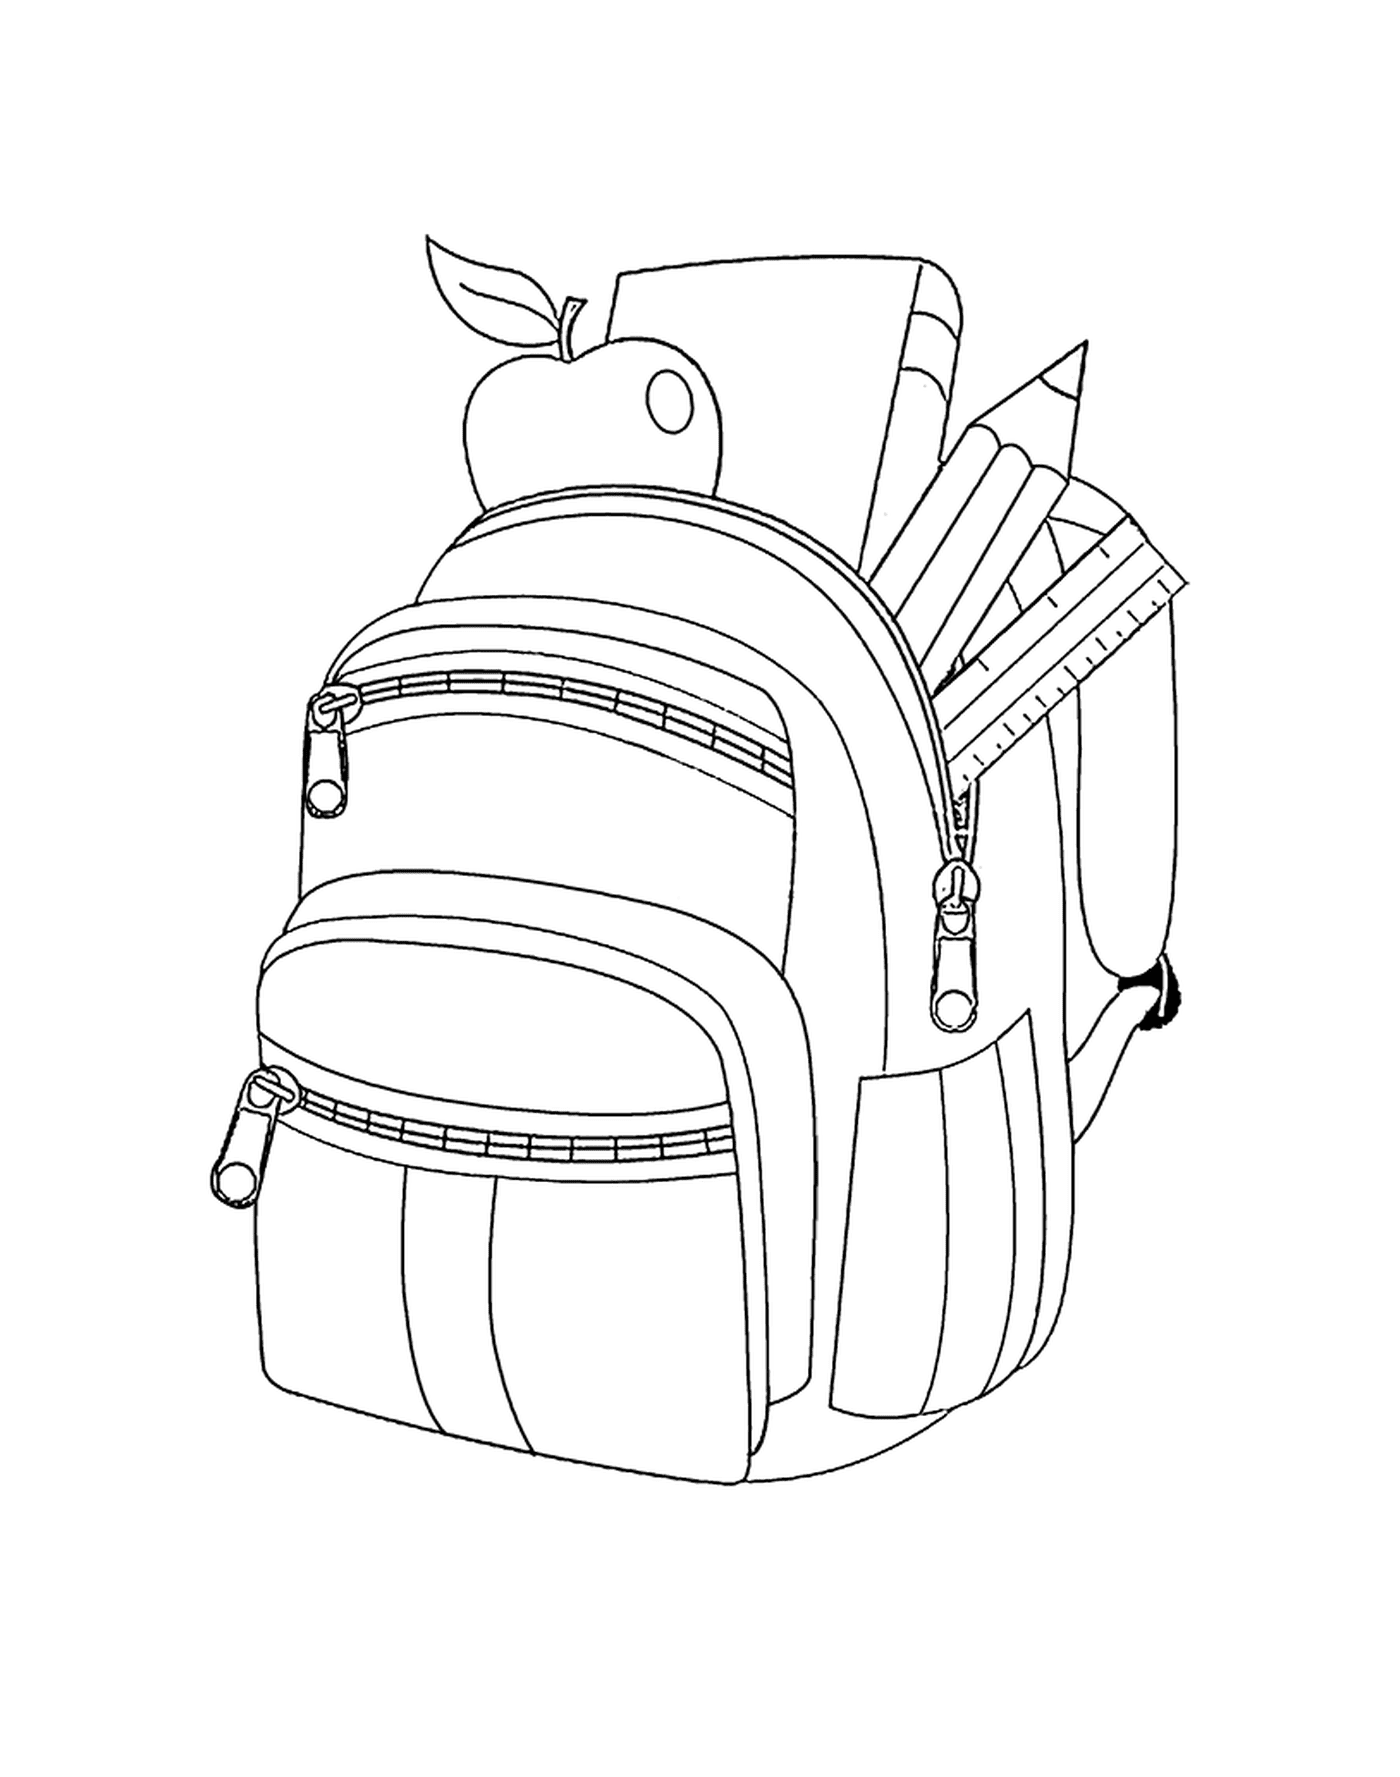   Un sac à dos avec des crayons et une pomme 